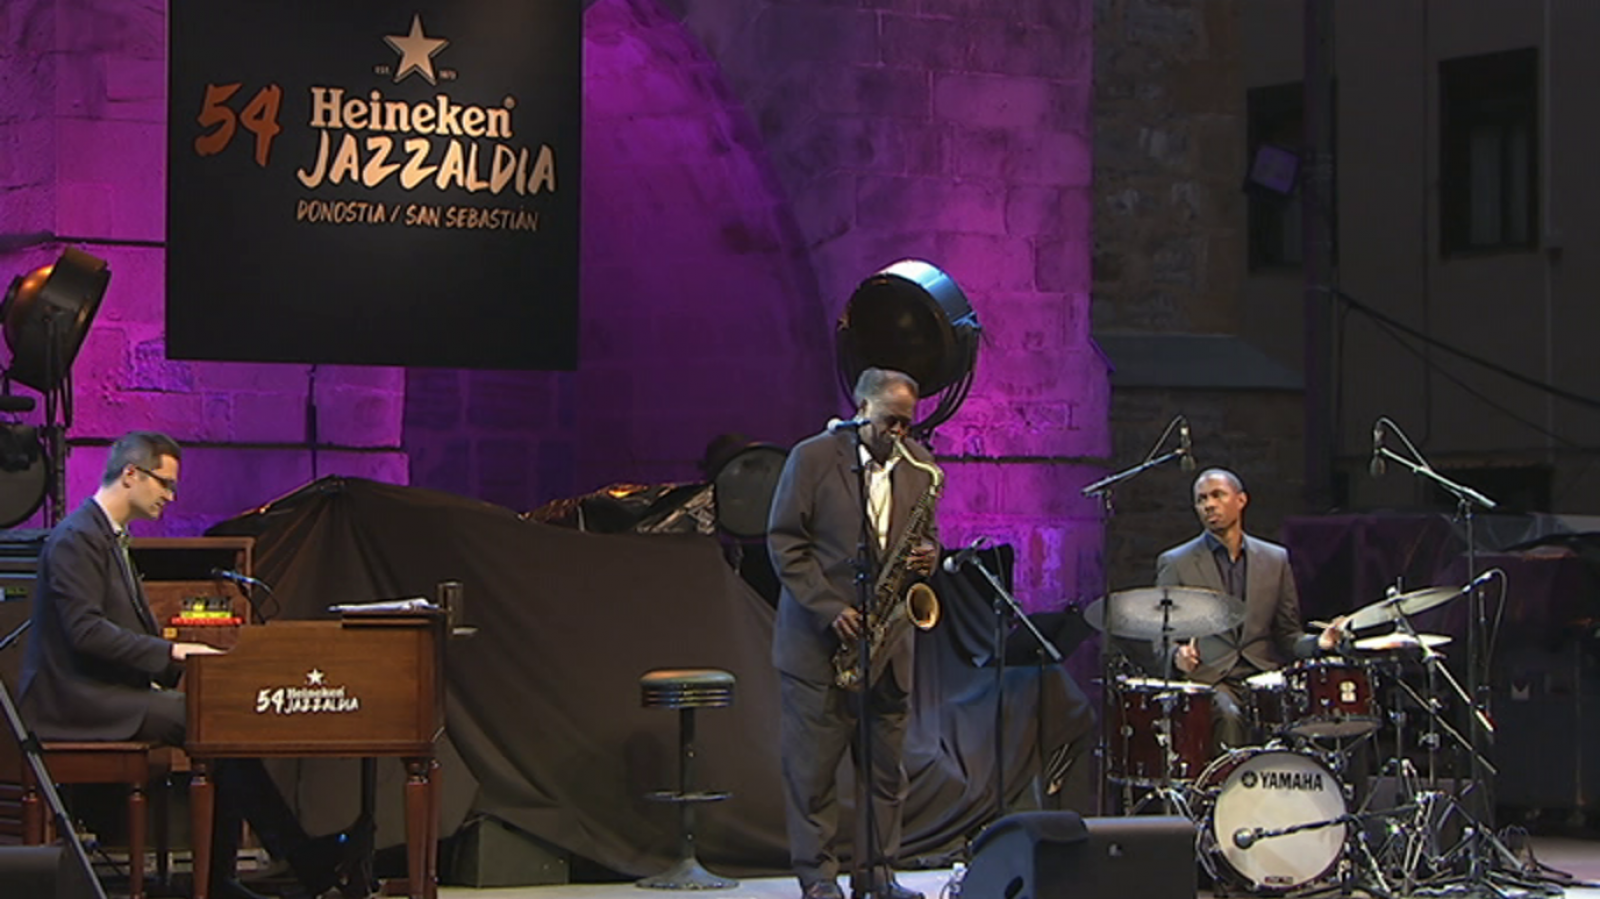 Festivales de verano - 54º Heineken Jazzaldia: Houston Person Trio - RTVE.es